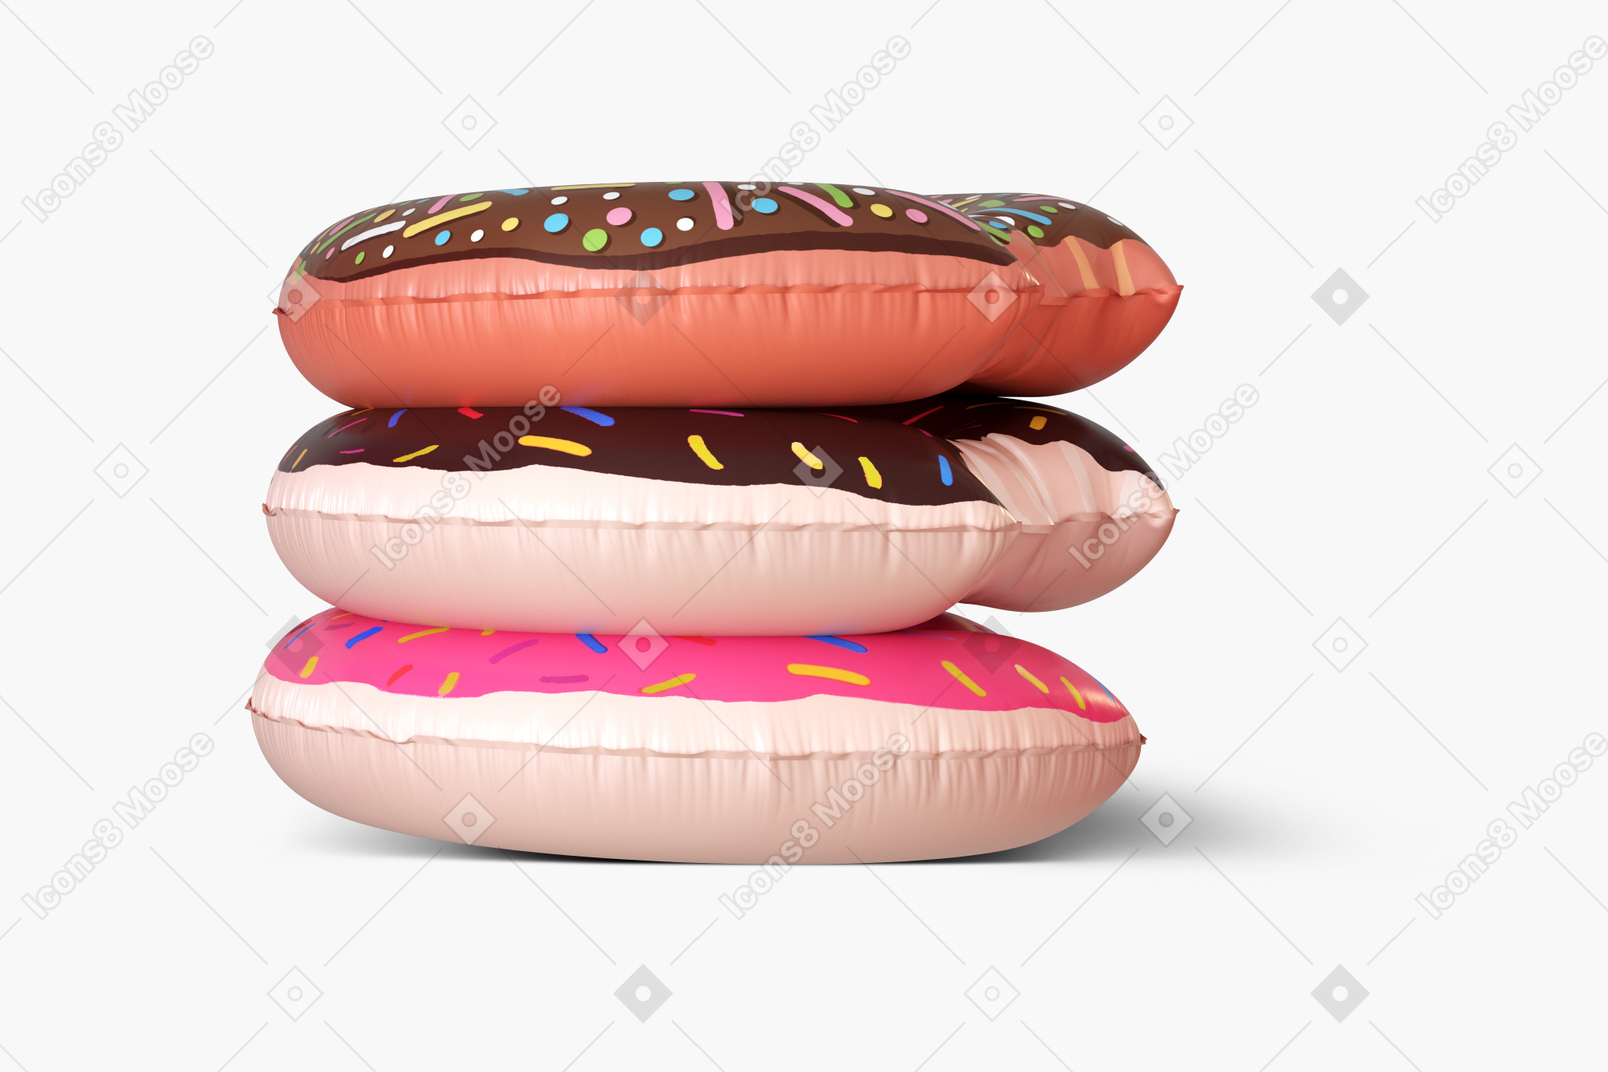 Donut gummiring aufeinander gelegt auf weißem hintergrund